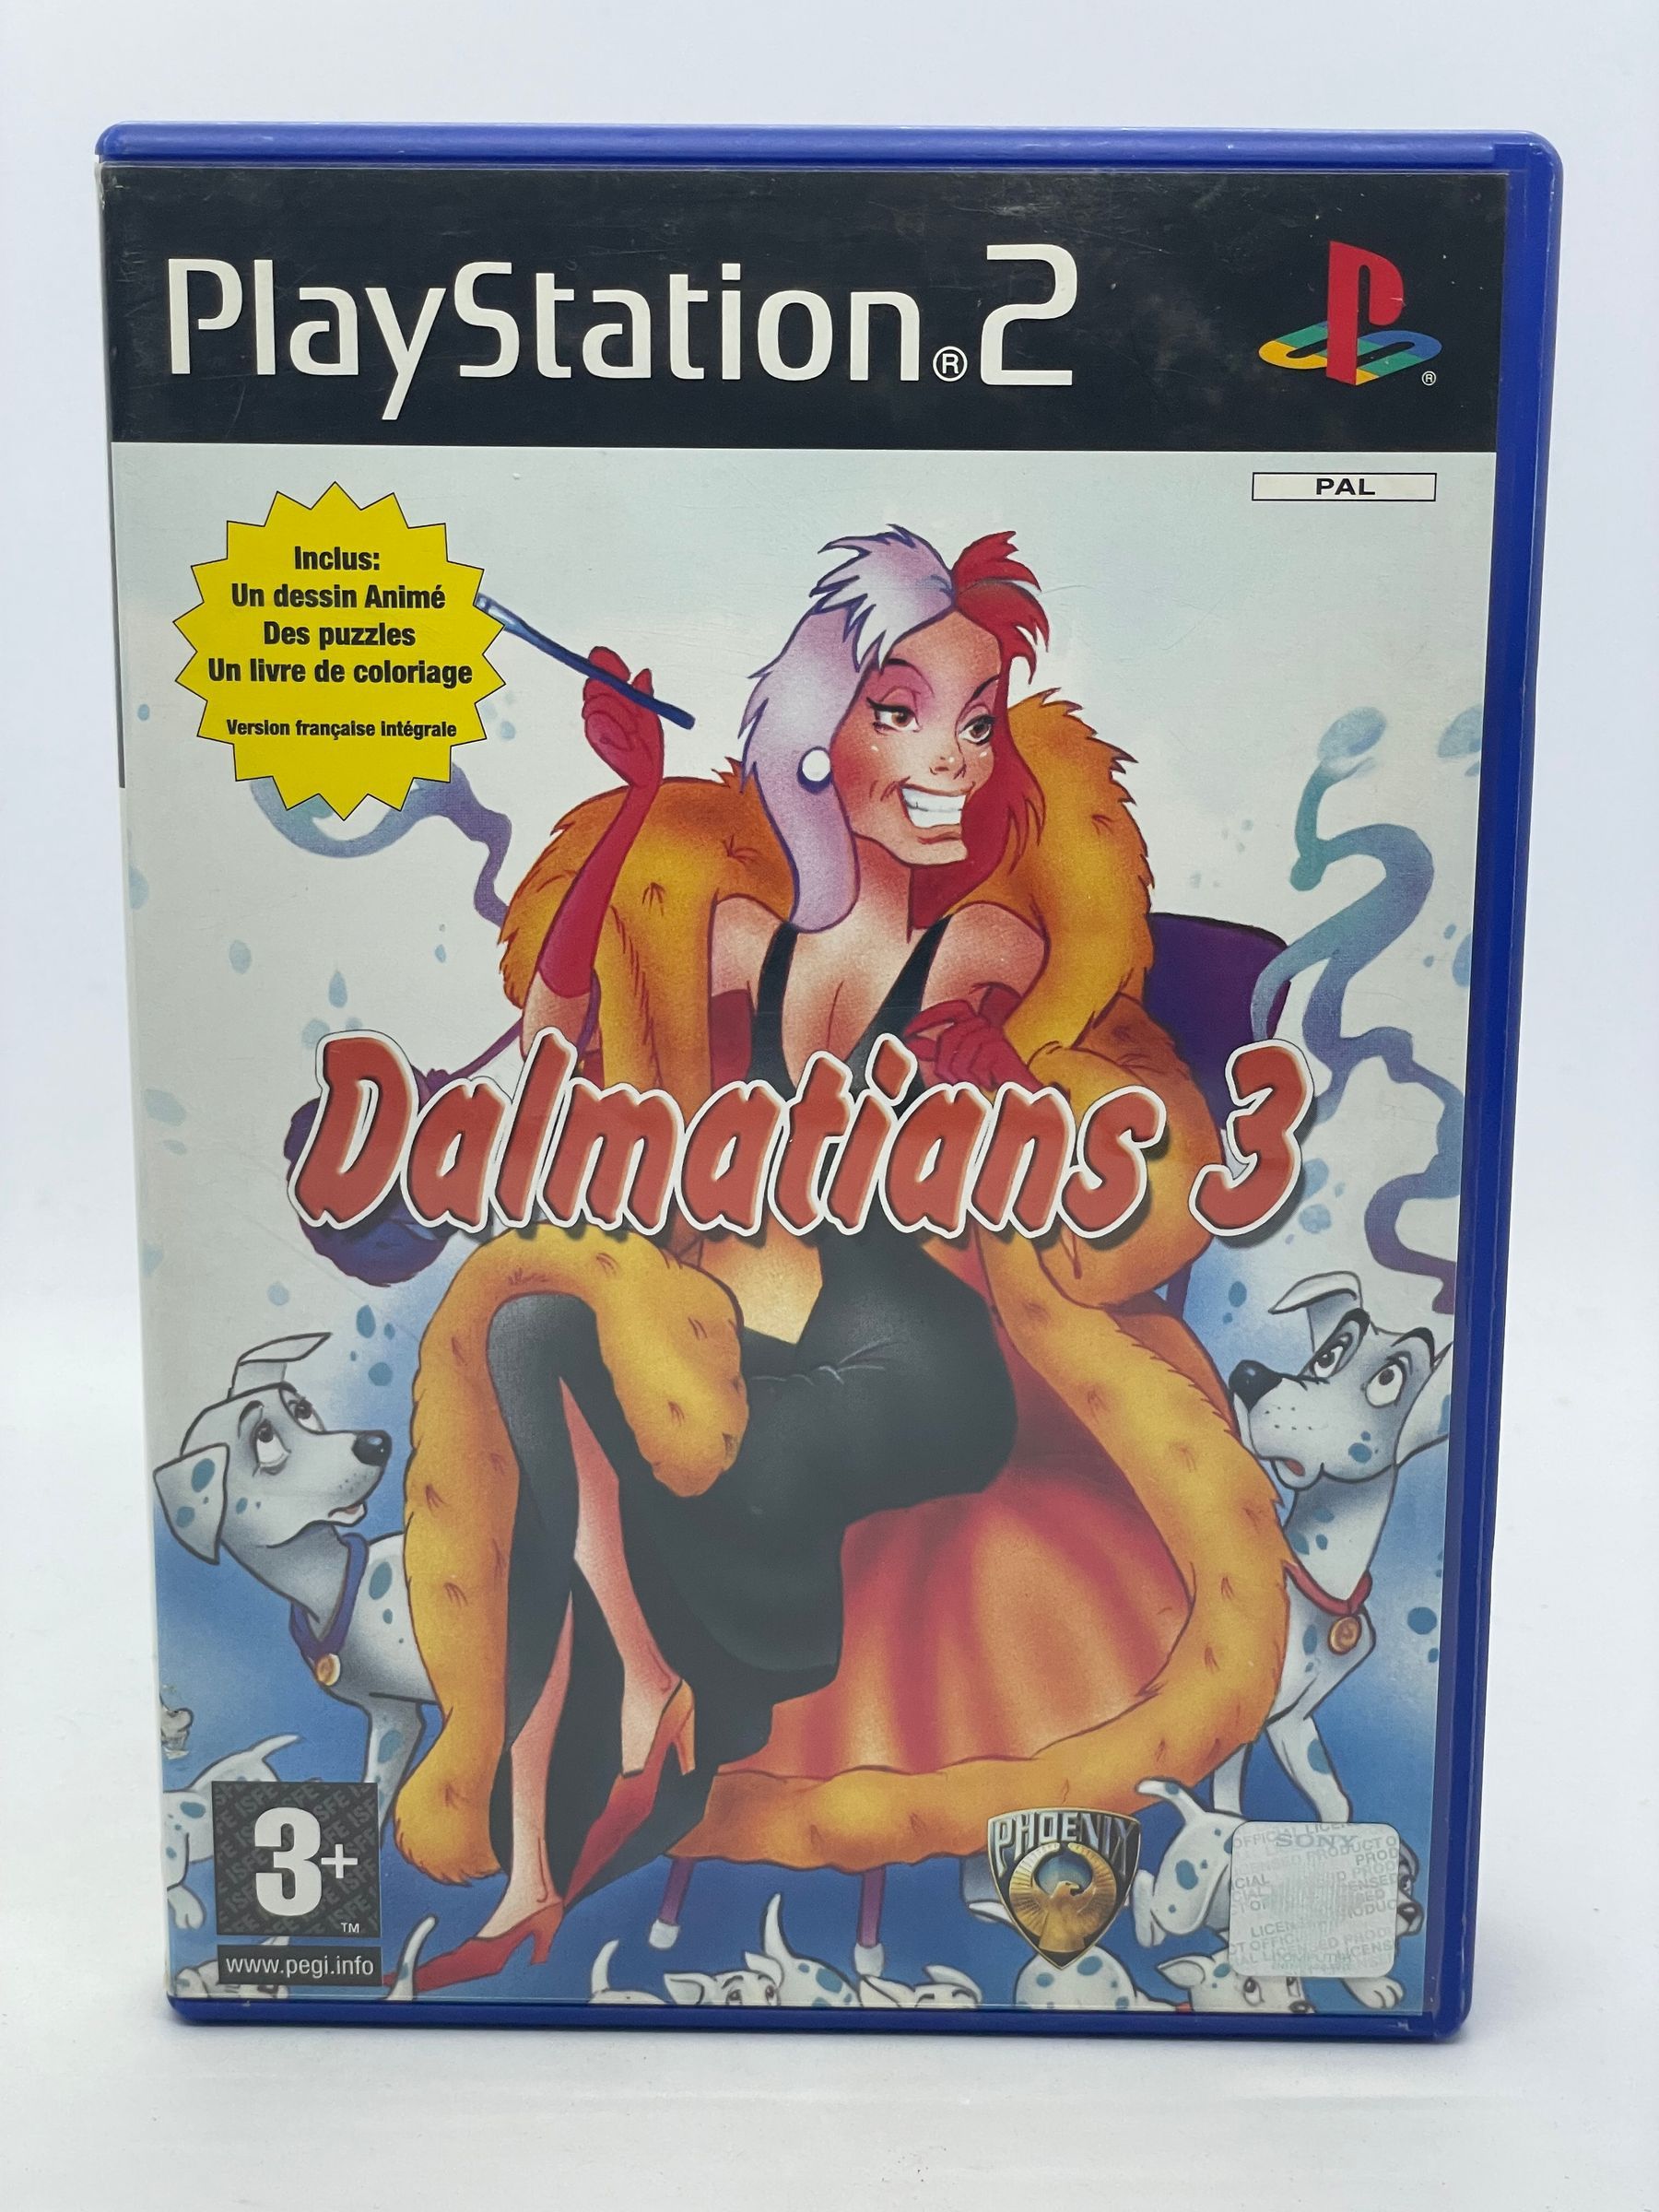 Dalmatians 3 PS2